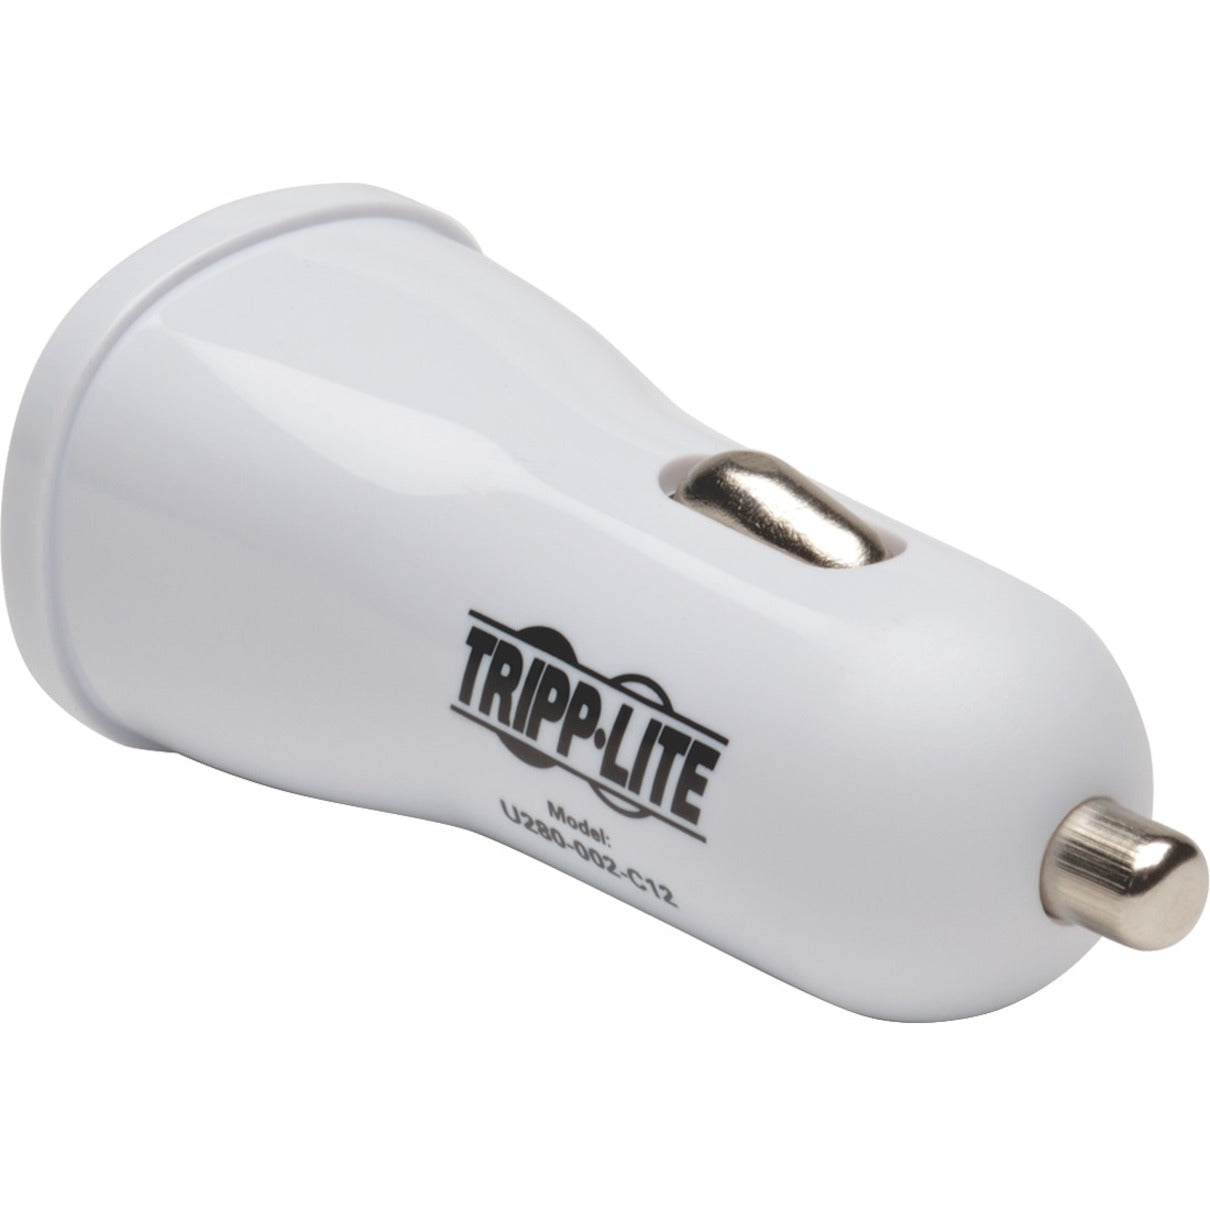 Tripp Lite U280-002-C12 Double Chargeur de Voiture USB pour Tablette / Téléphone 5V / 3.1A Garantie Limitée de 2 Ans